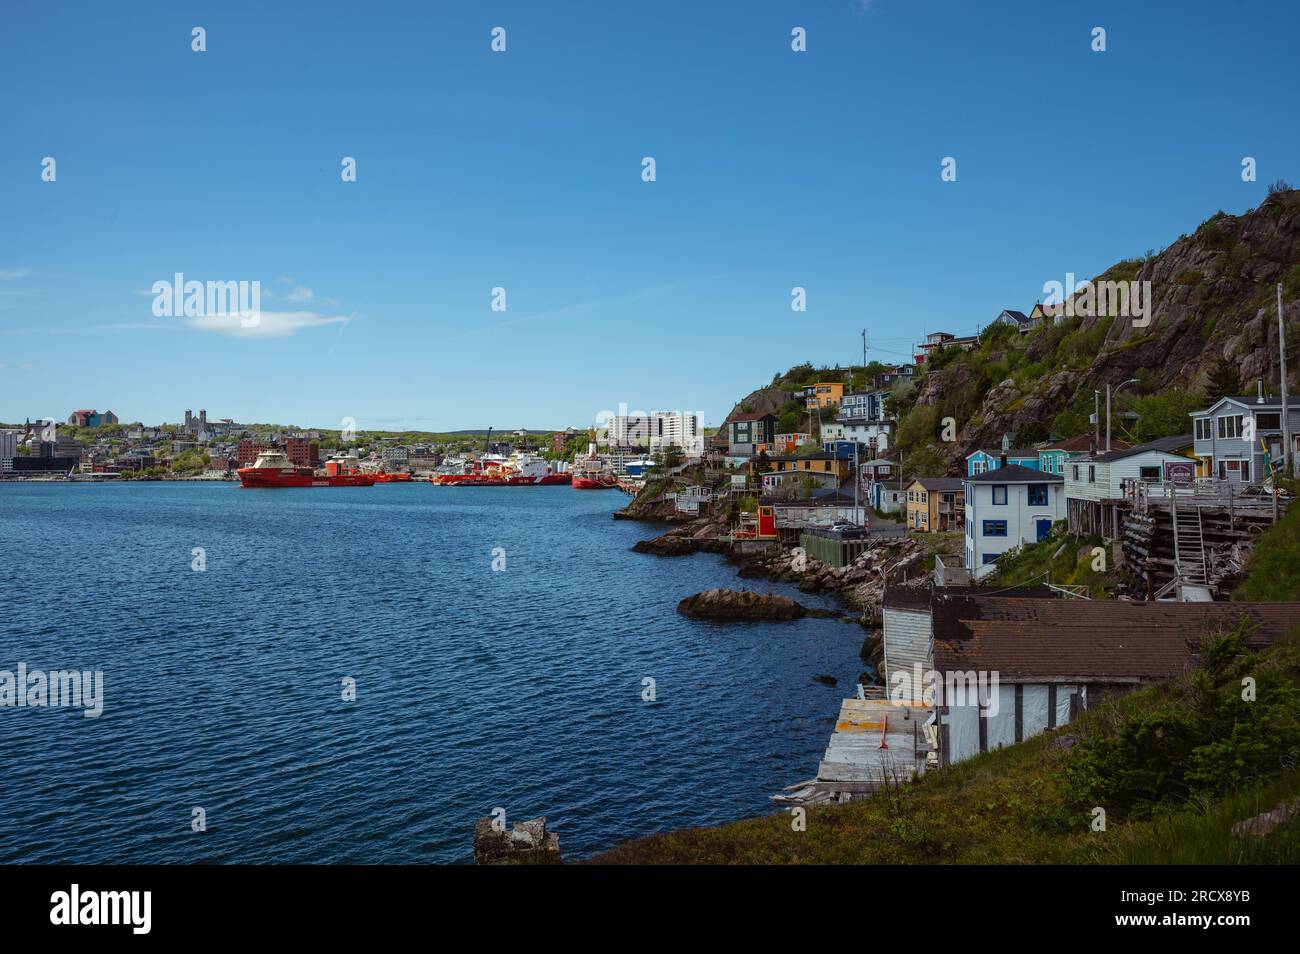 Blick auf Häuser und Boote im Hafen von St. John's, Neufundland. Stockfoto